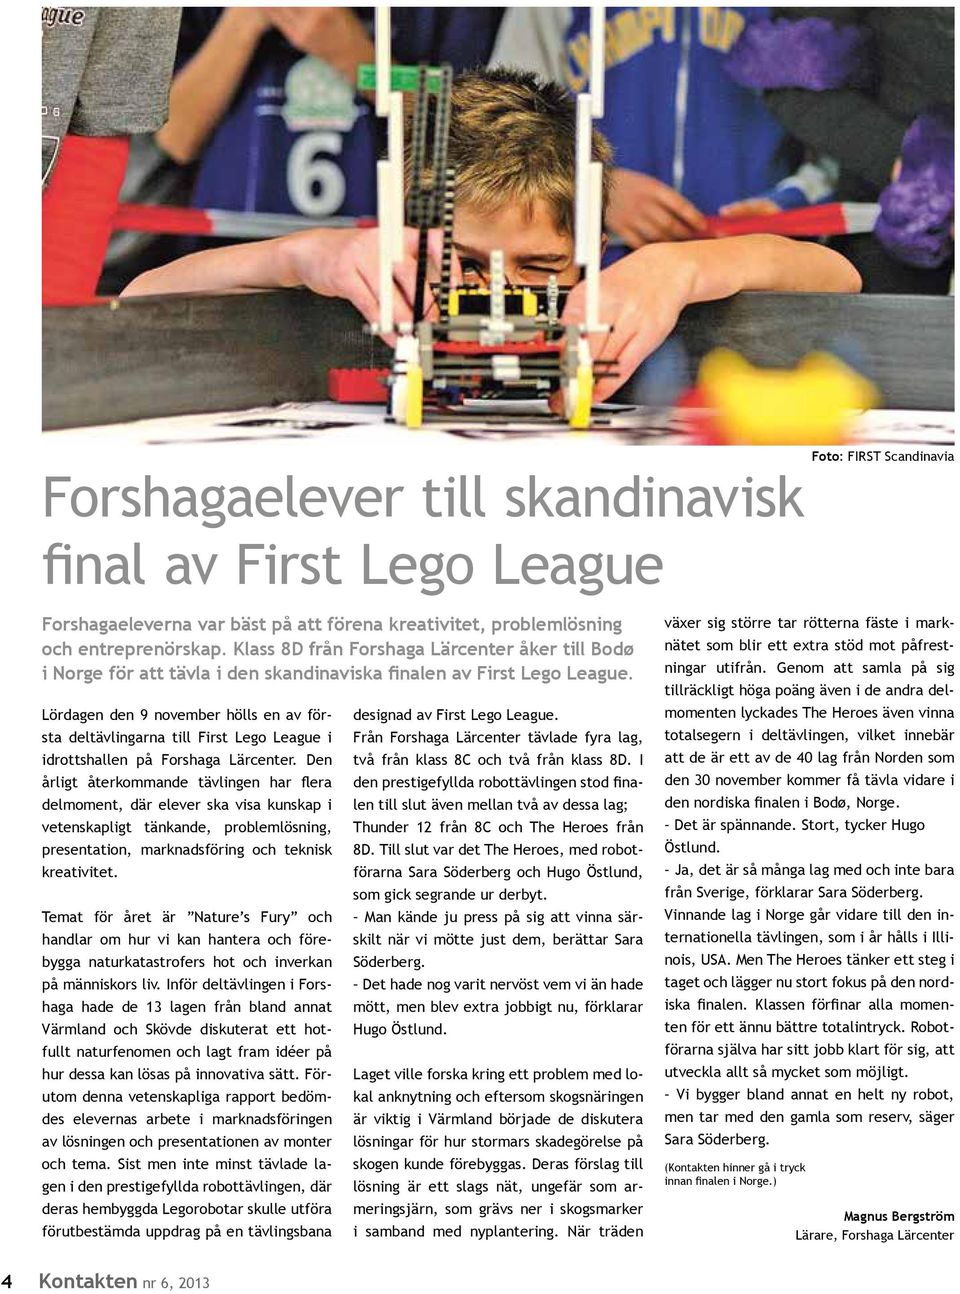 Lördagen den 9 november hölls en av första deltävlingarna till First Lego League i idrottshallen på Forshaga Lärcenter.